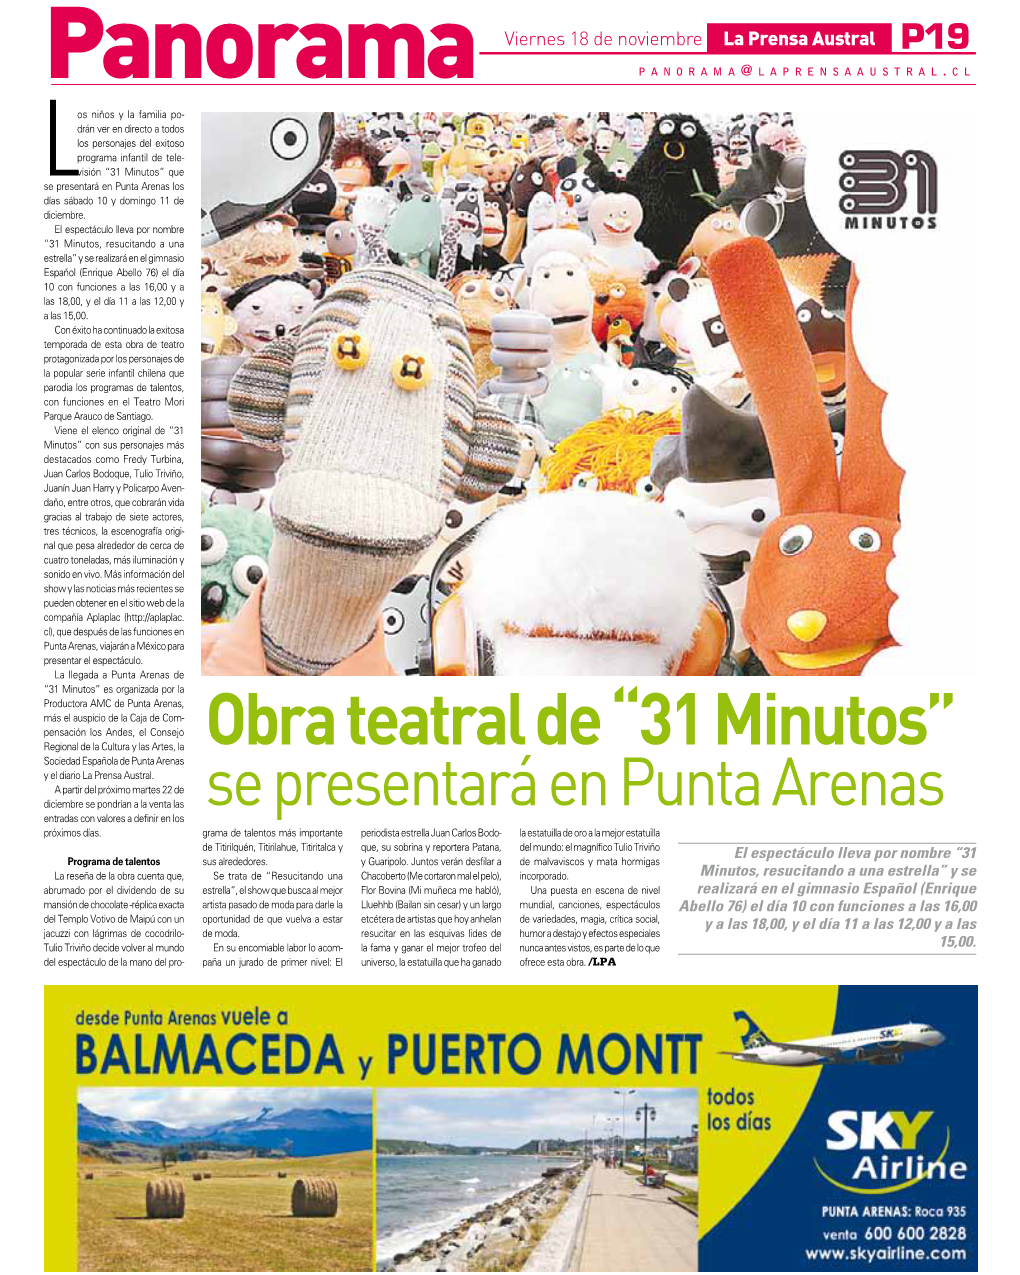 Obra Teatral De “31 Minutos” Sociedad Española De Punta Arenas Y El Diario La Prensa Austral